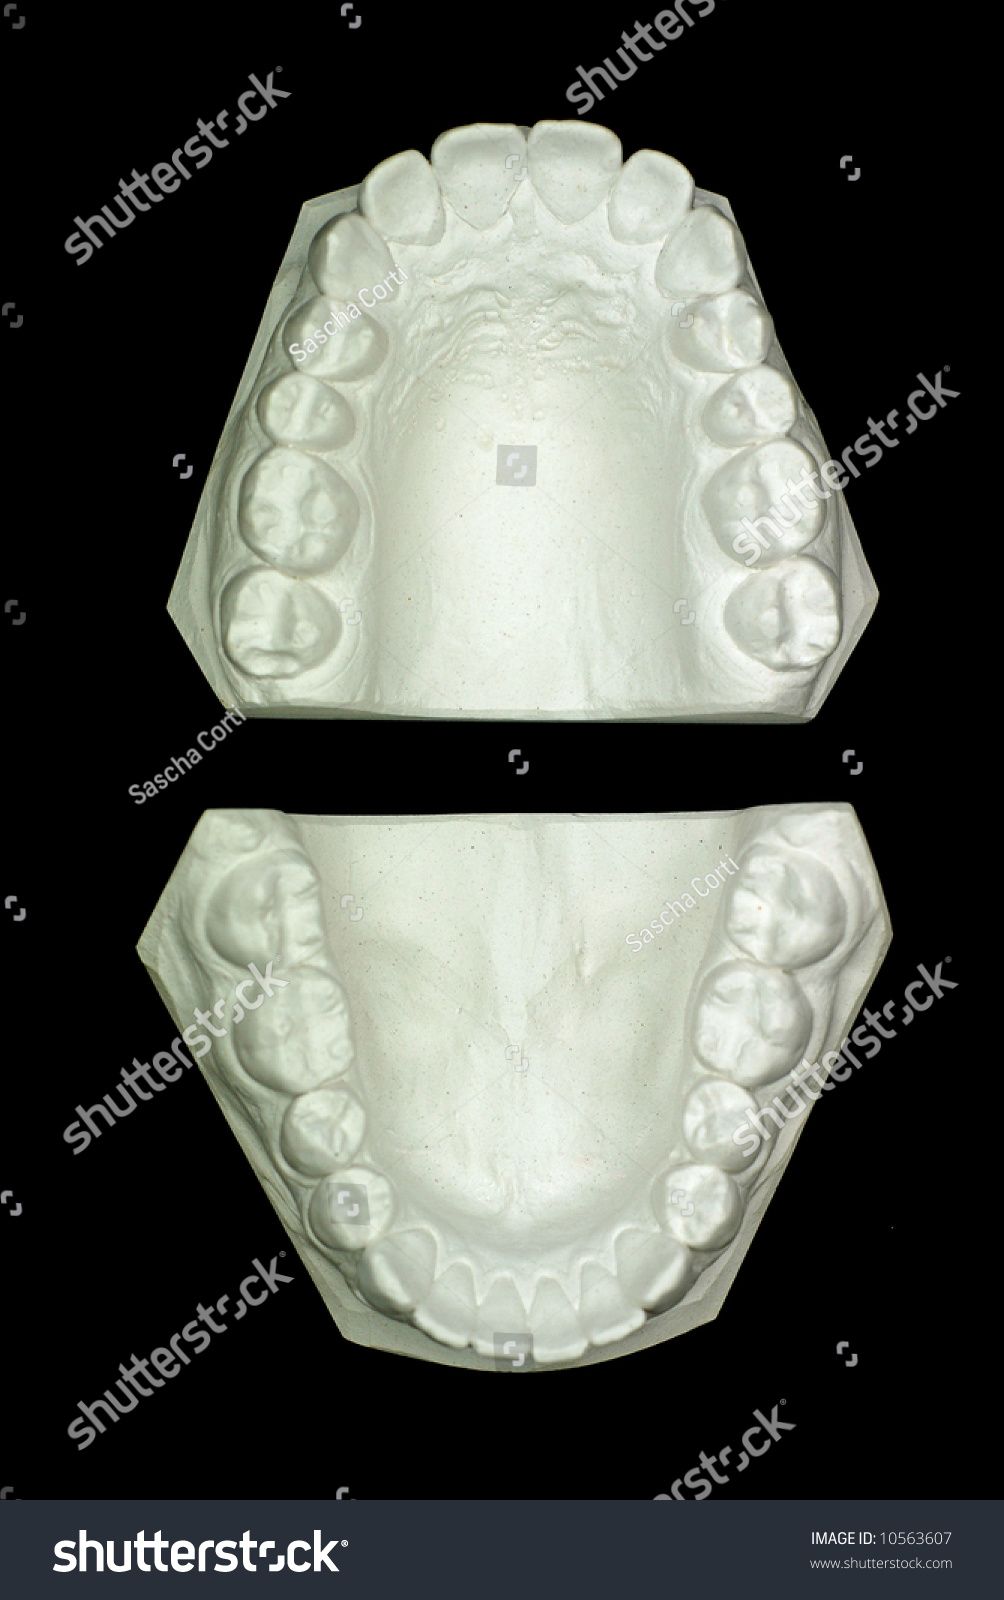 石膏模型石膏牙--上层视图-医疗保健,科学-海洛